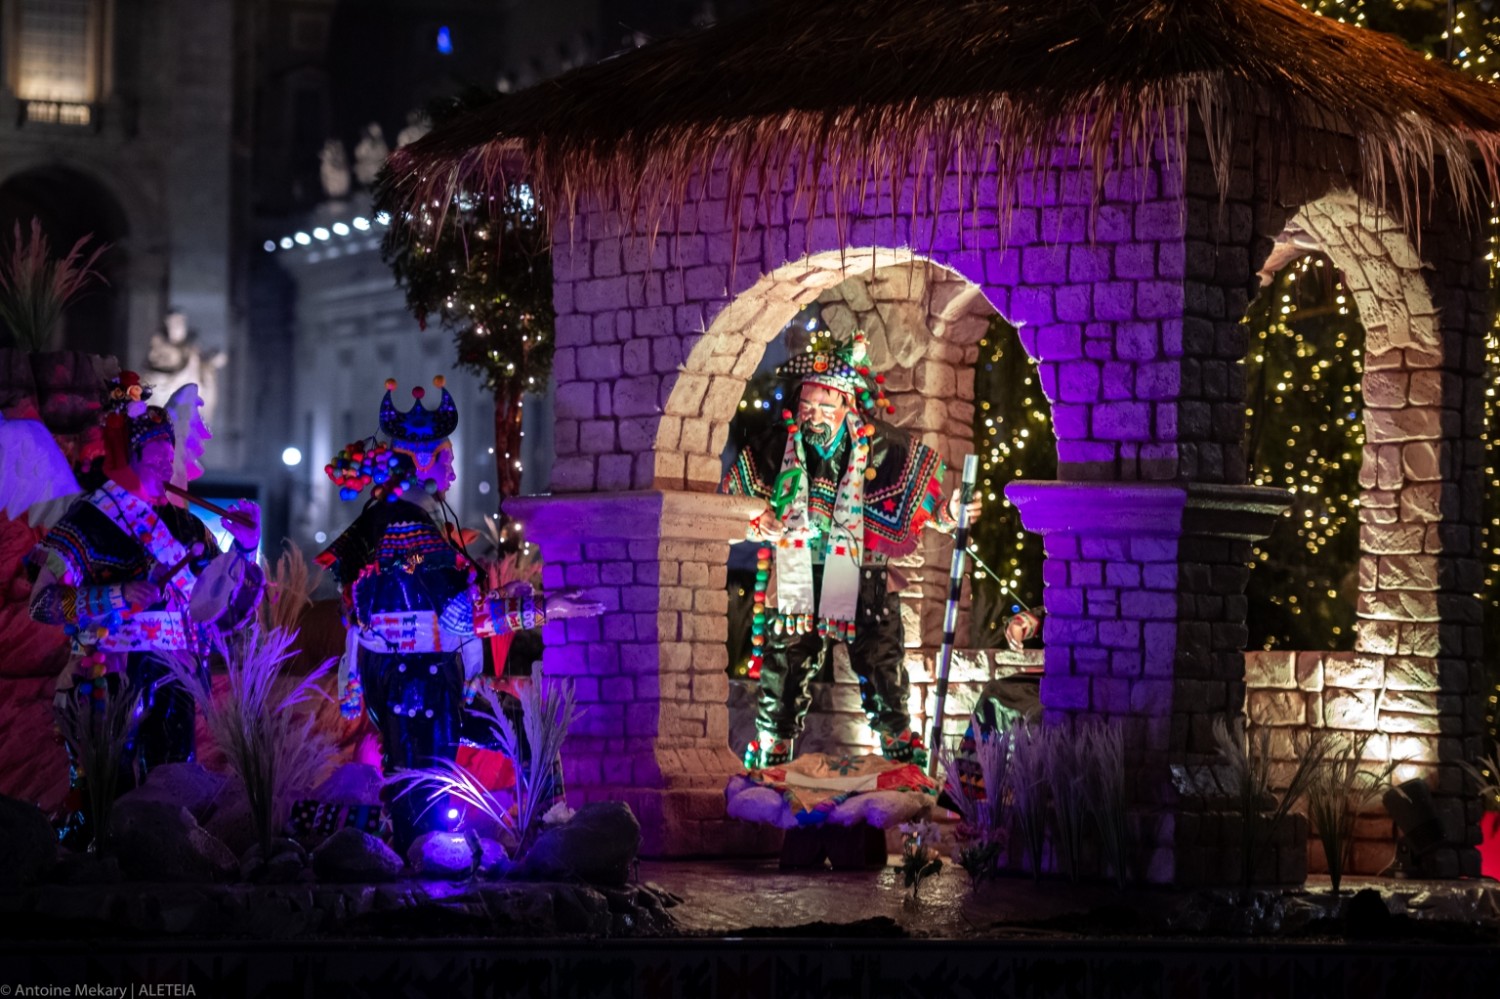 Hình ảnh - Cảnh Giáng Sinh và cây Noël tại Quảng trường Thánh ...